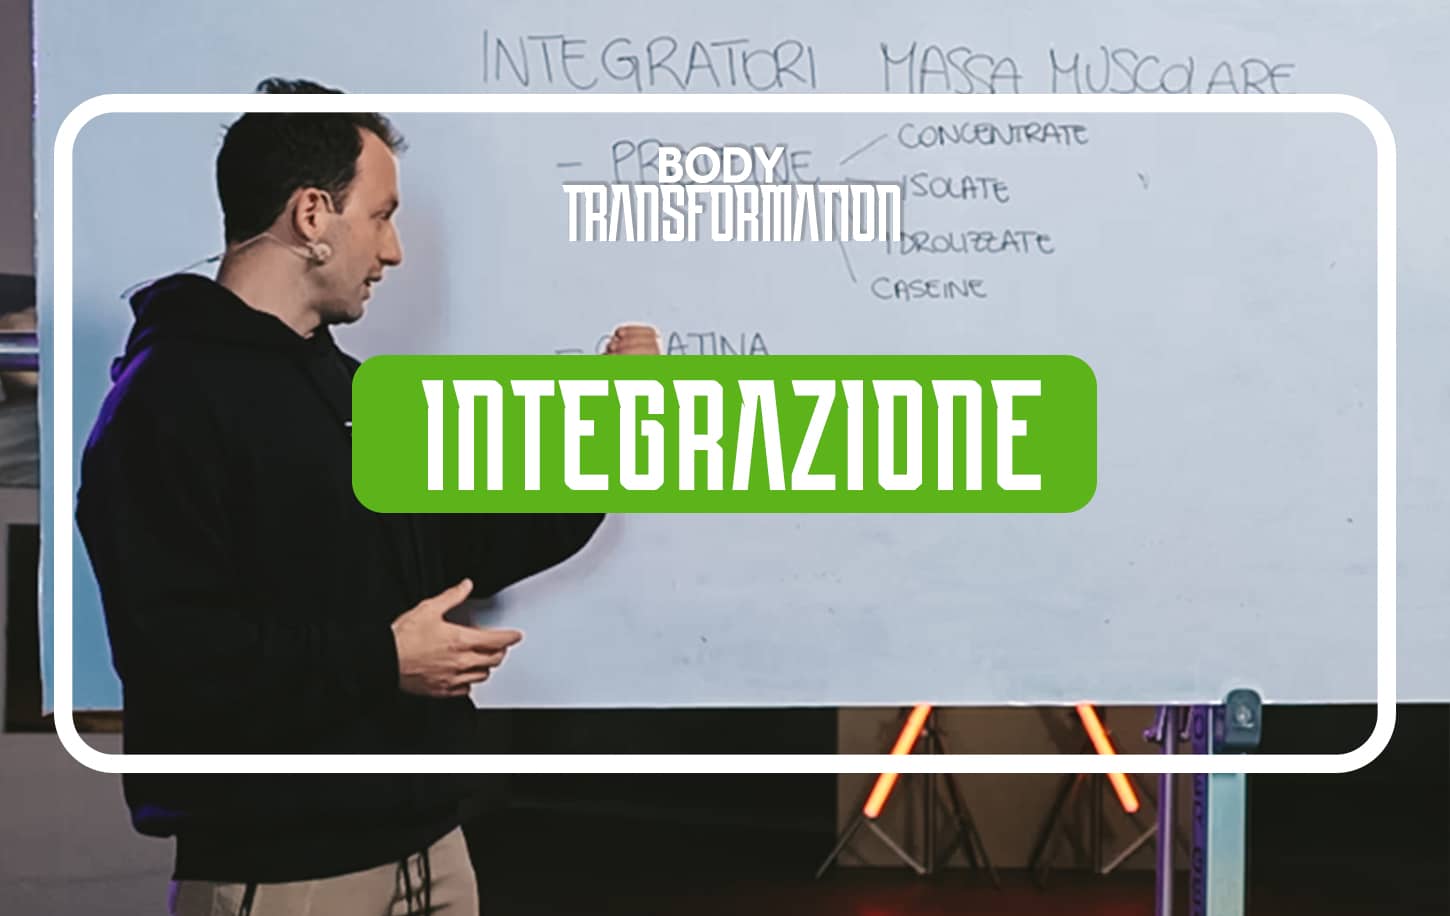 L’Integrazione (pt.7) by Emil Lazzaroni